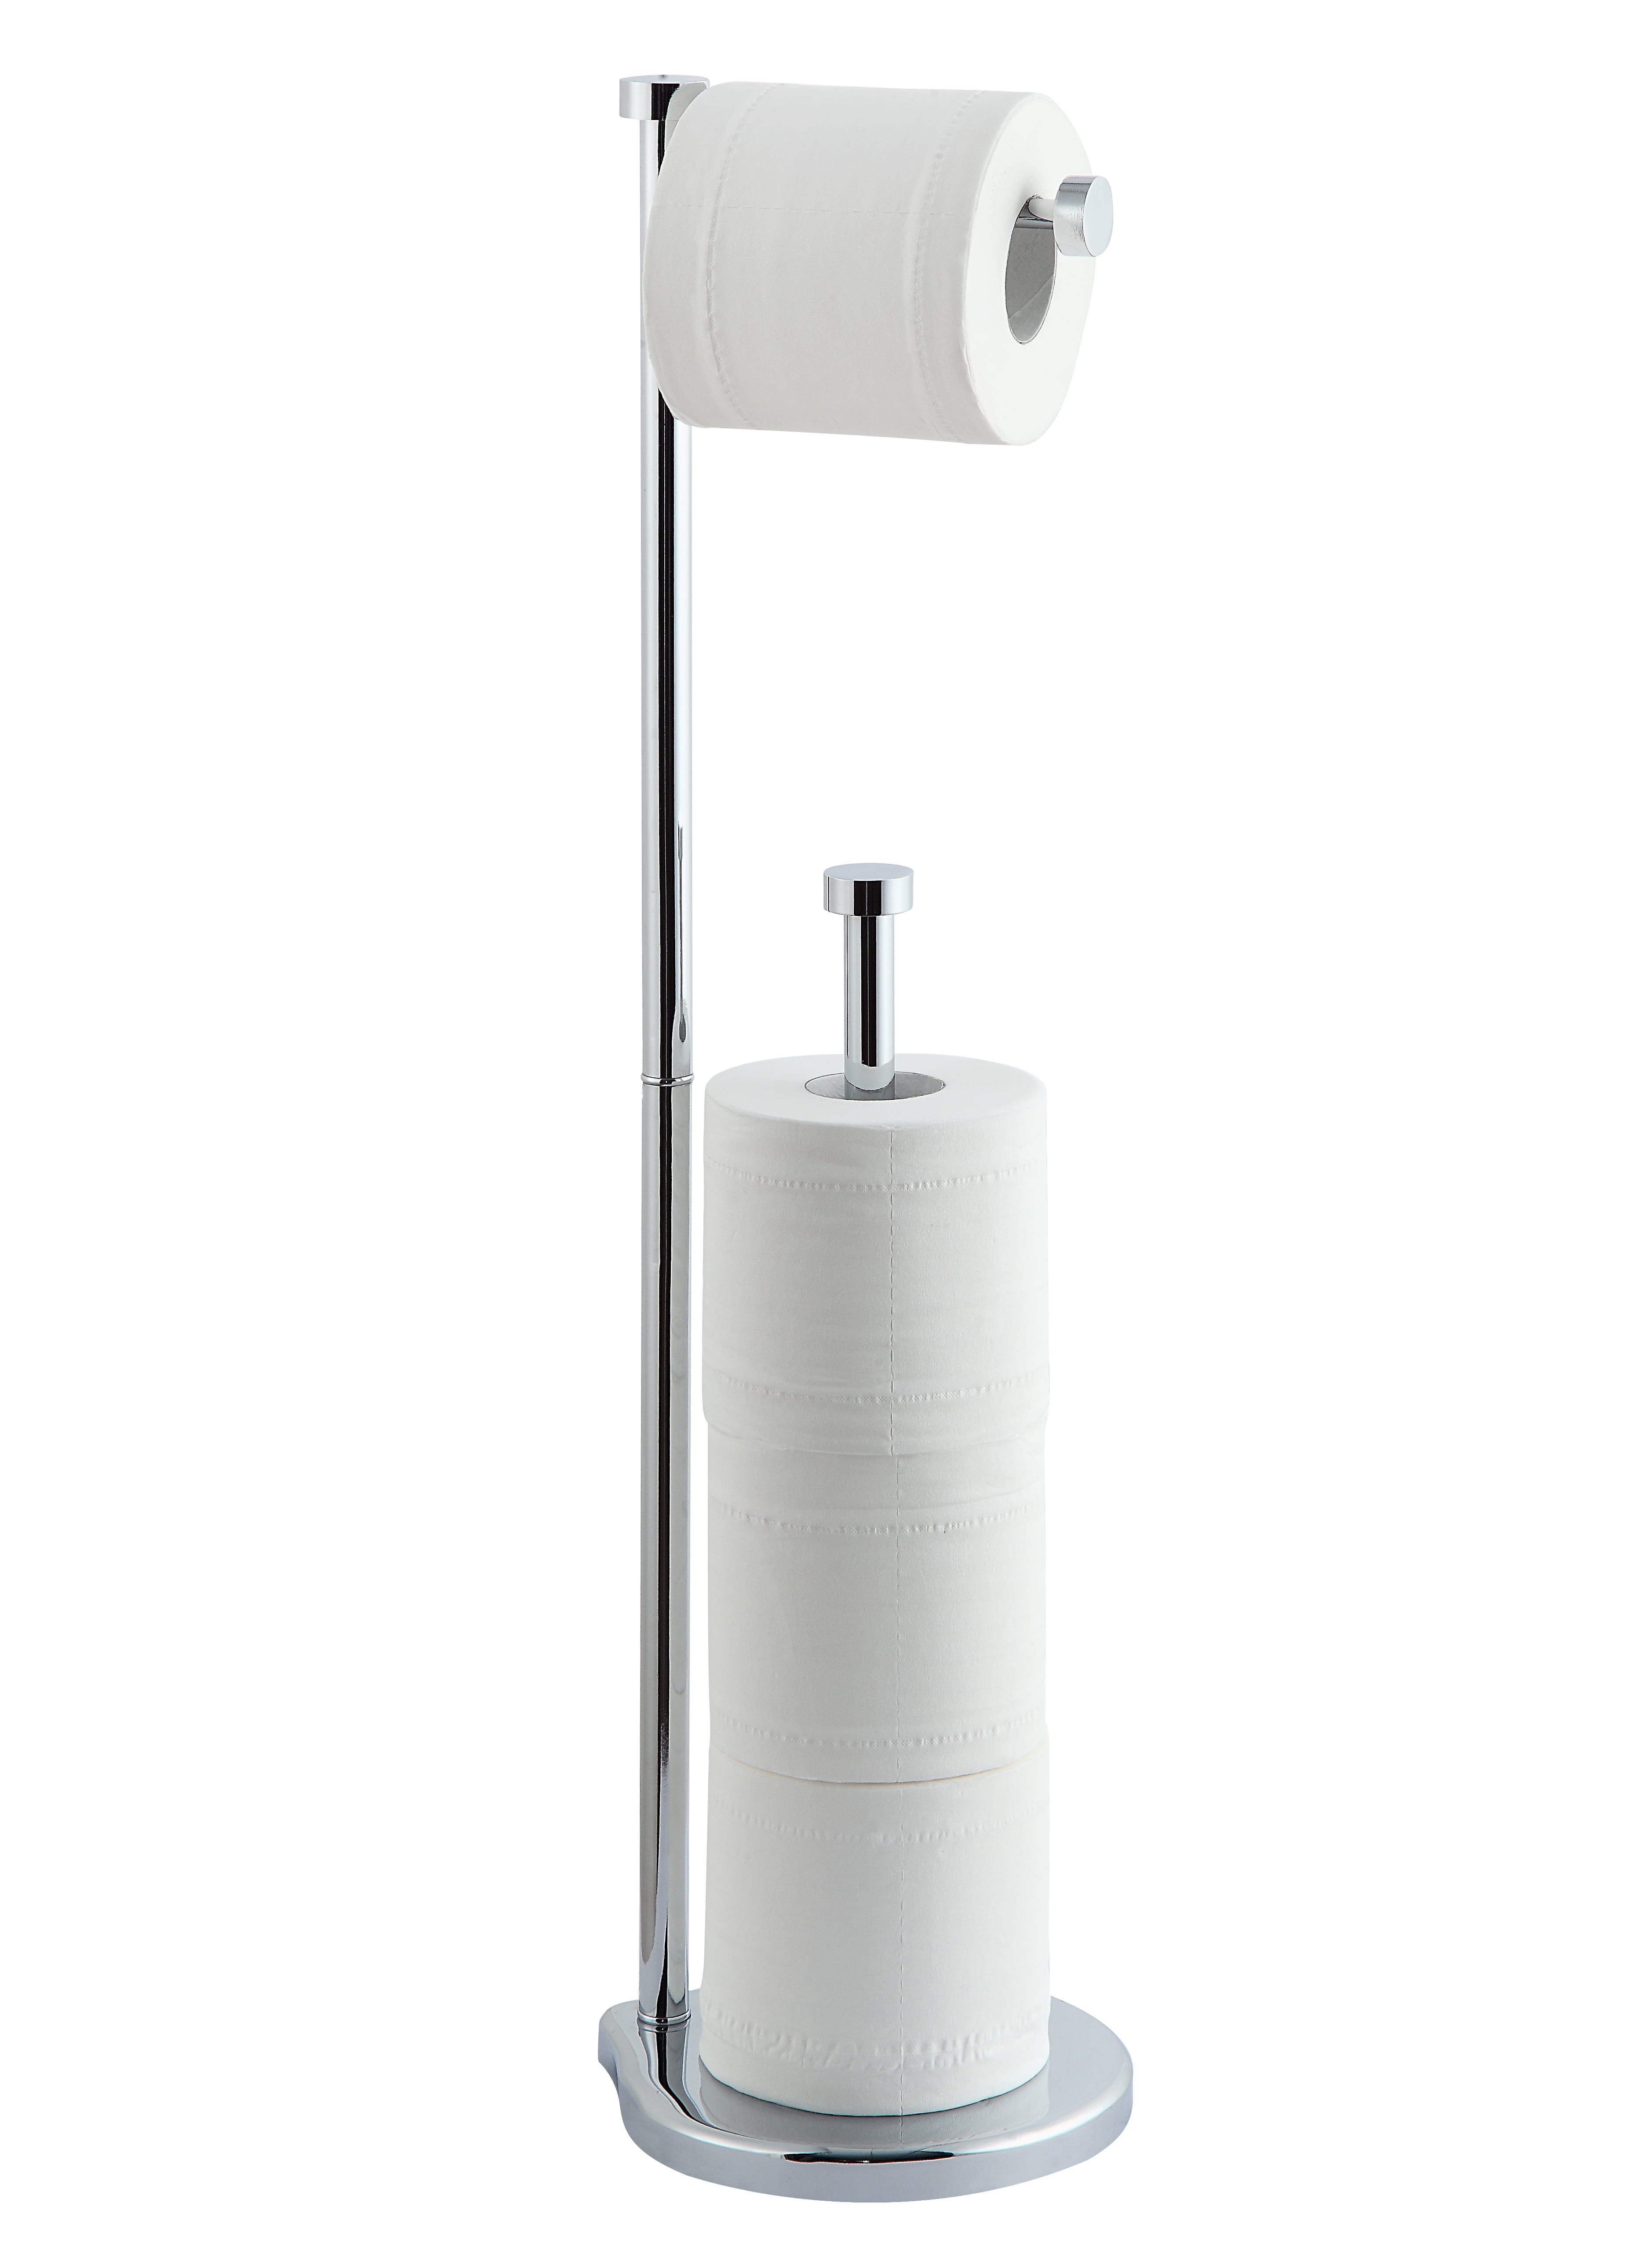 Bathroom Toilet Roll Paper Holder&Towel Ring Fresh Stainless Steel Chrome Rack 